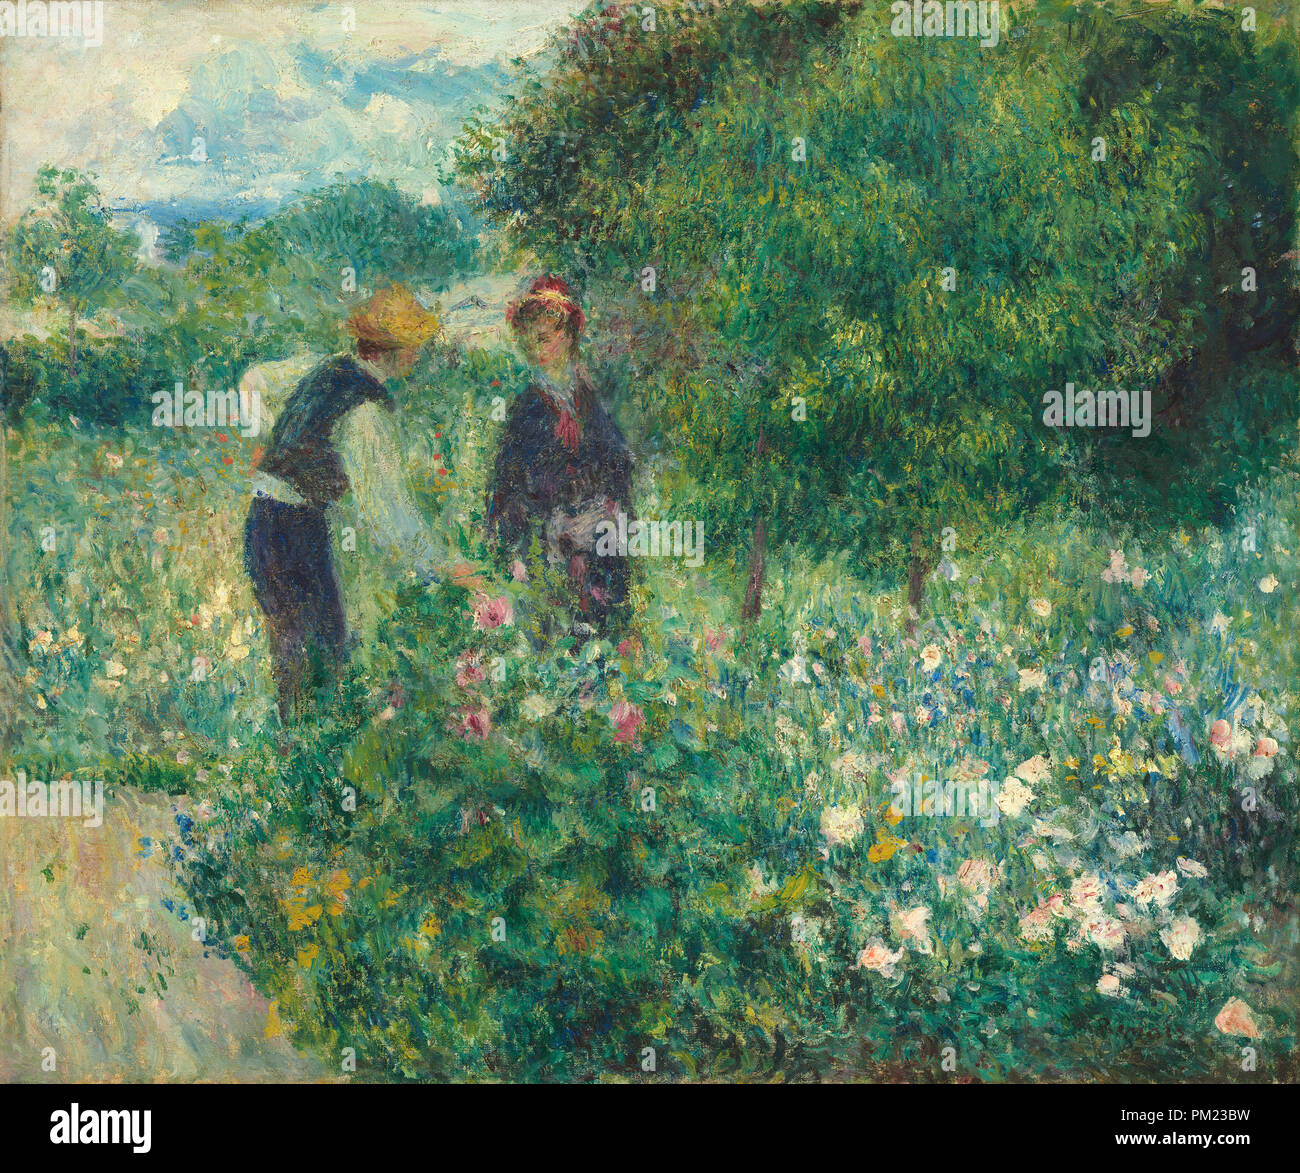 La cueillette des fleurs. En date du : 1875. Dimensions : hors tout : 54,3 x 65,2 cm (21 3/8 x 25 11/16 po.) : 78,1 x 88,9 encadré x 7,6 cm (30 x 35 3/4 x 3 in.). Médium : Huile sur toile. Musée : National Gallery of Art, Washington DC. Auteur : Auguste Renoir. Banque D'Images